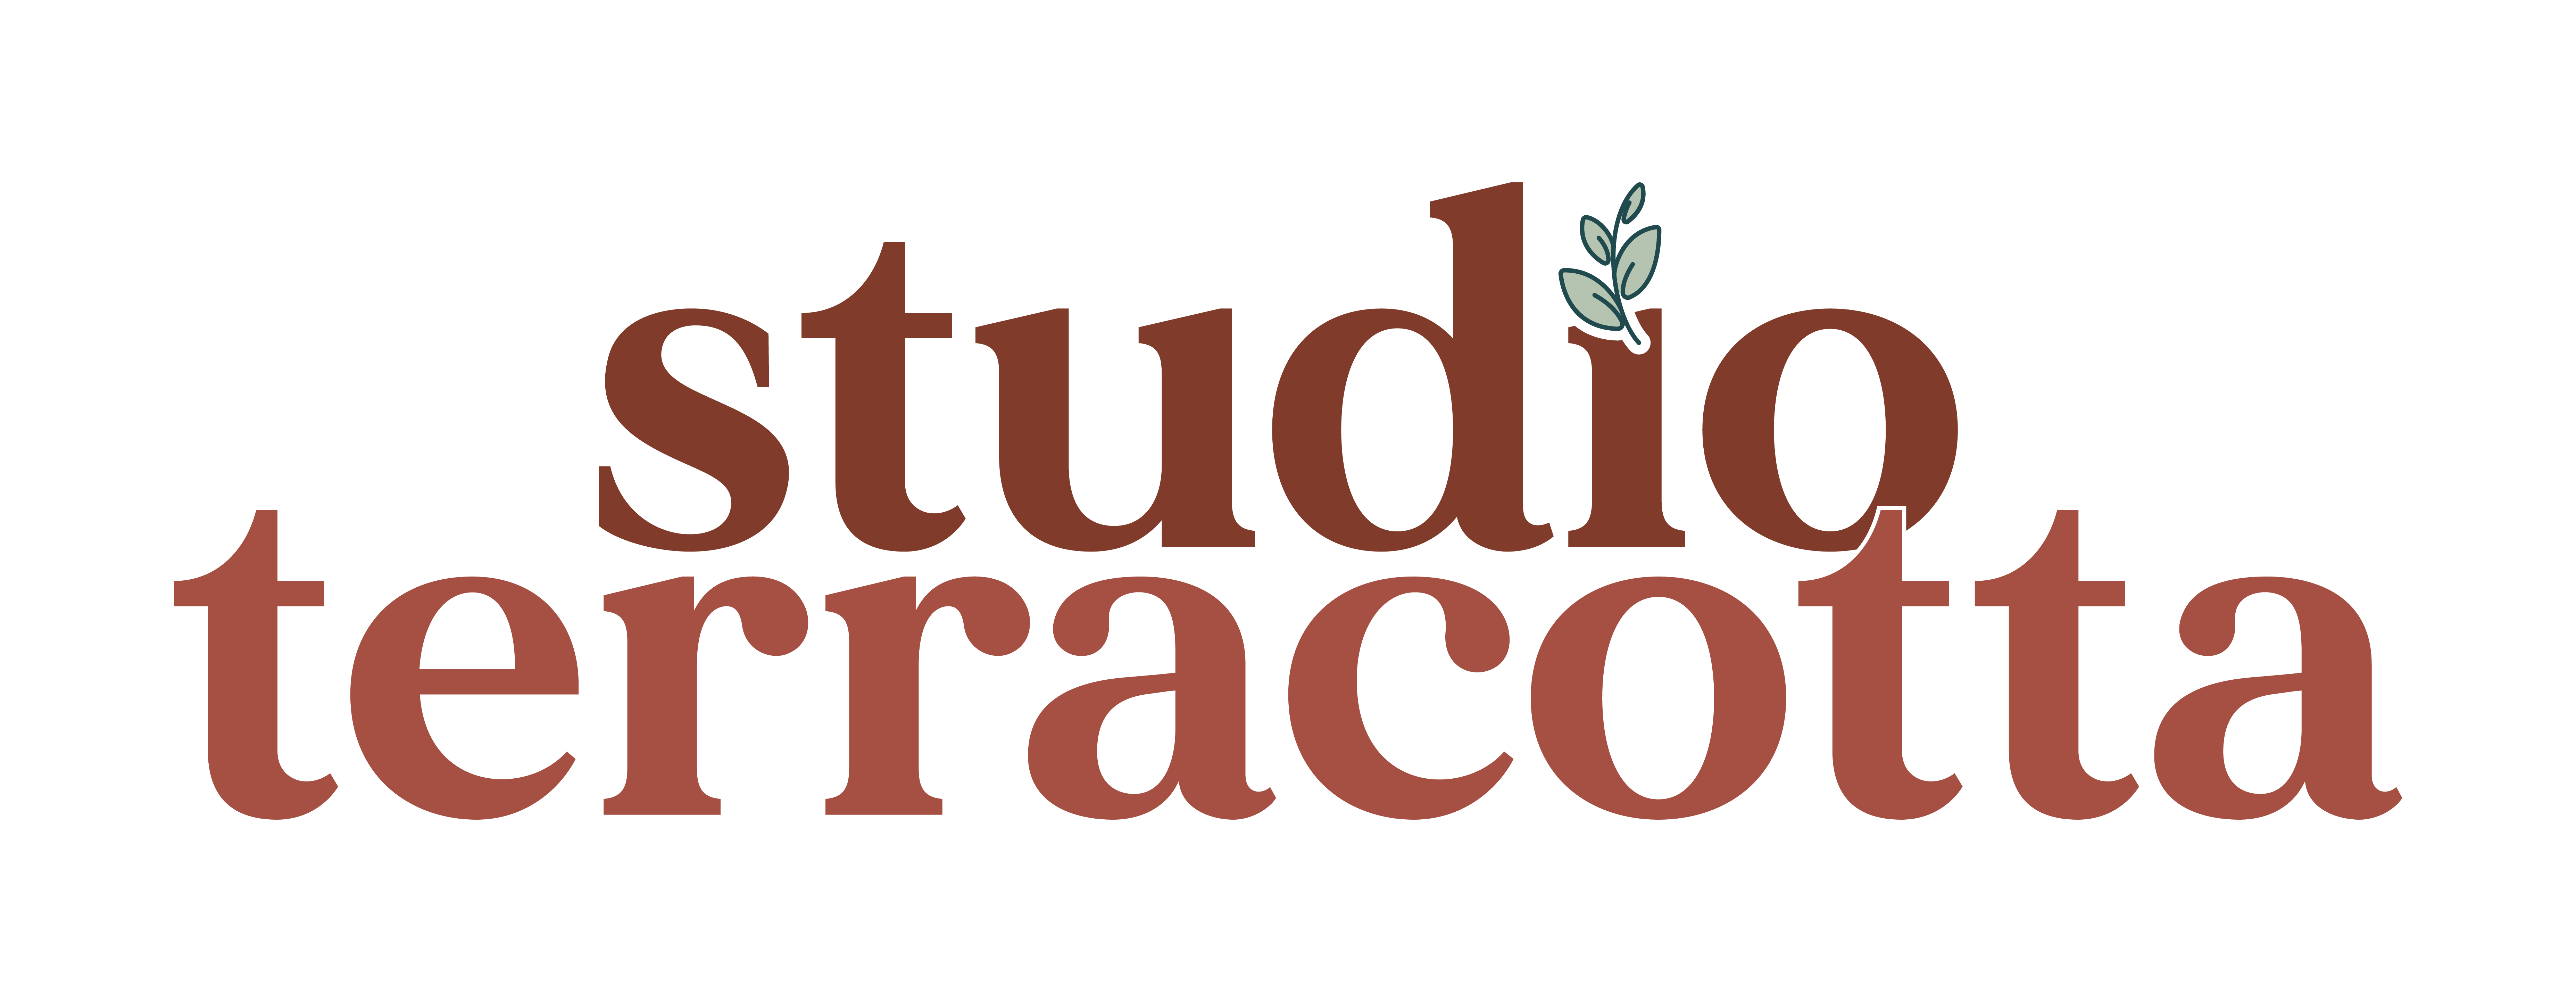 Studio terracotta – studio graphique Logo